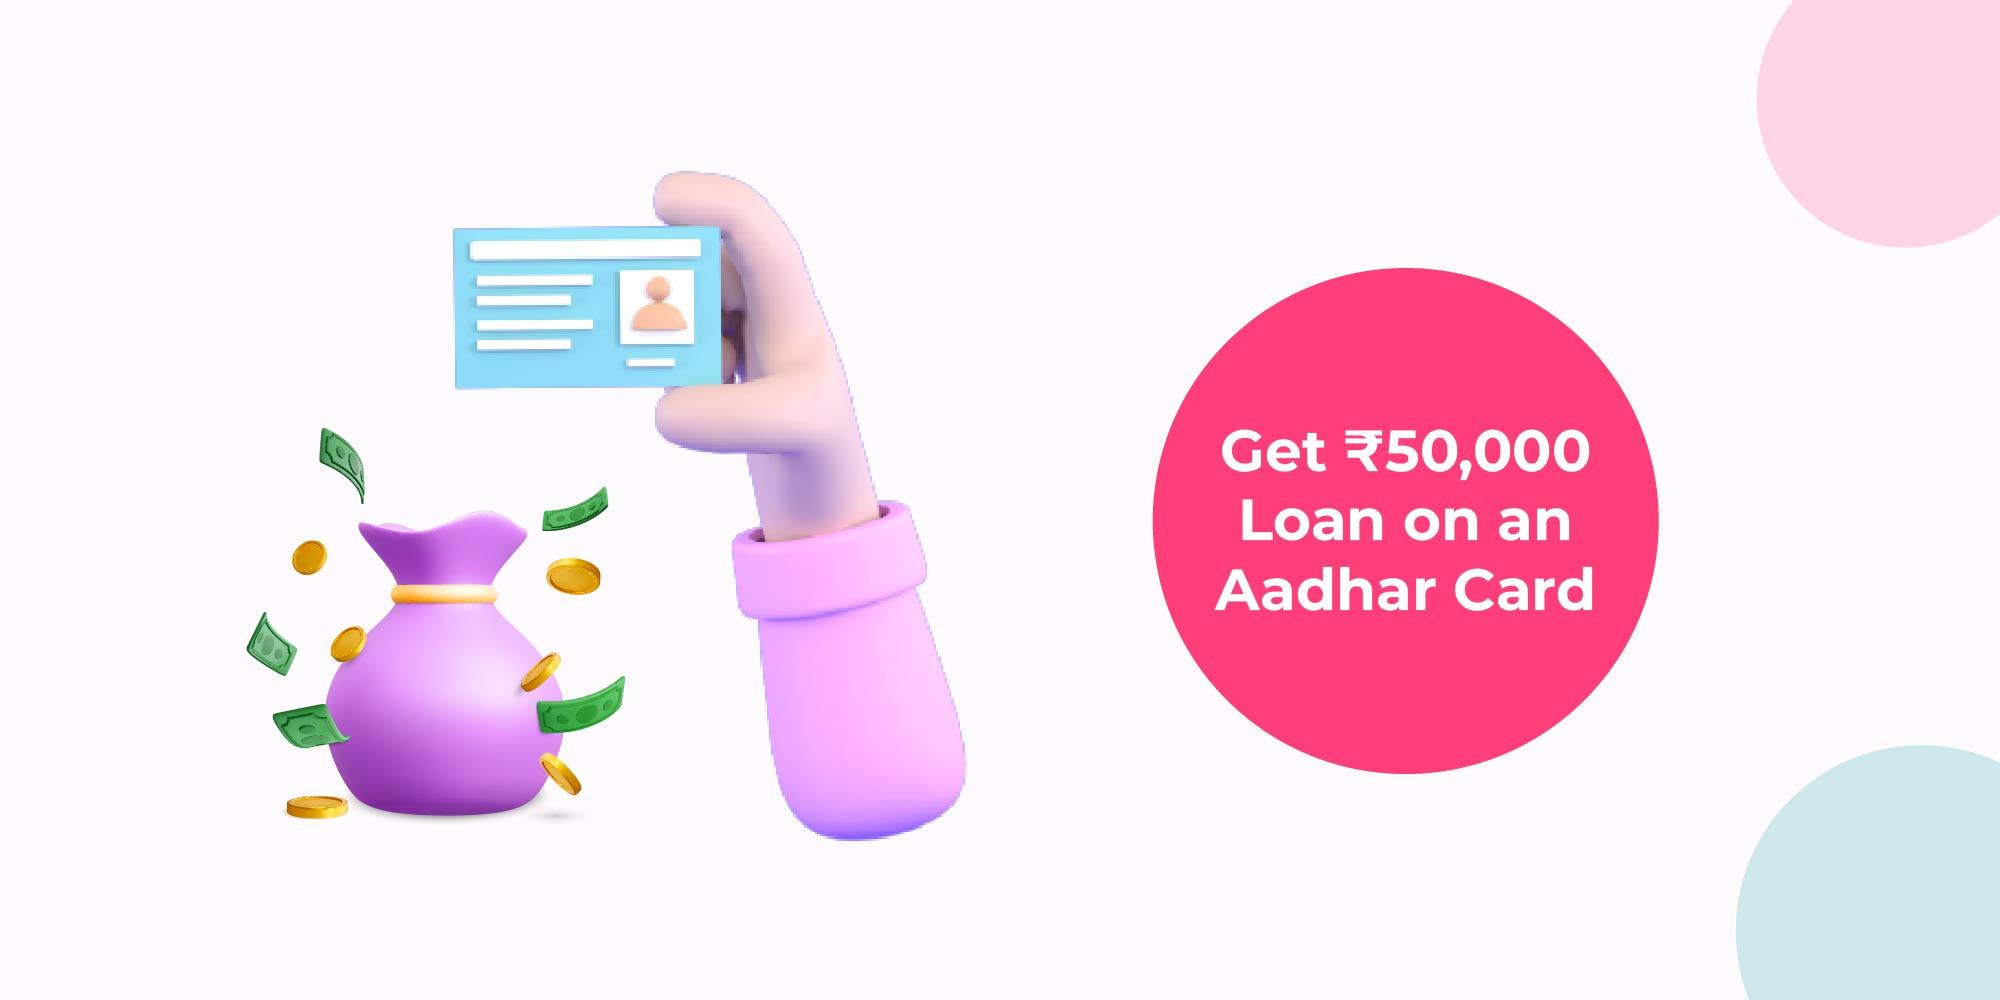 How to get a ₹50,000 loan on Aadhaar Card online easily